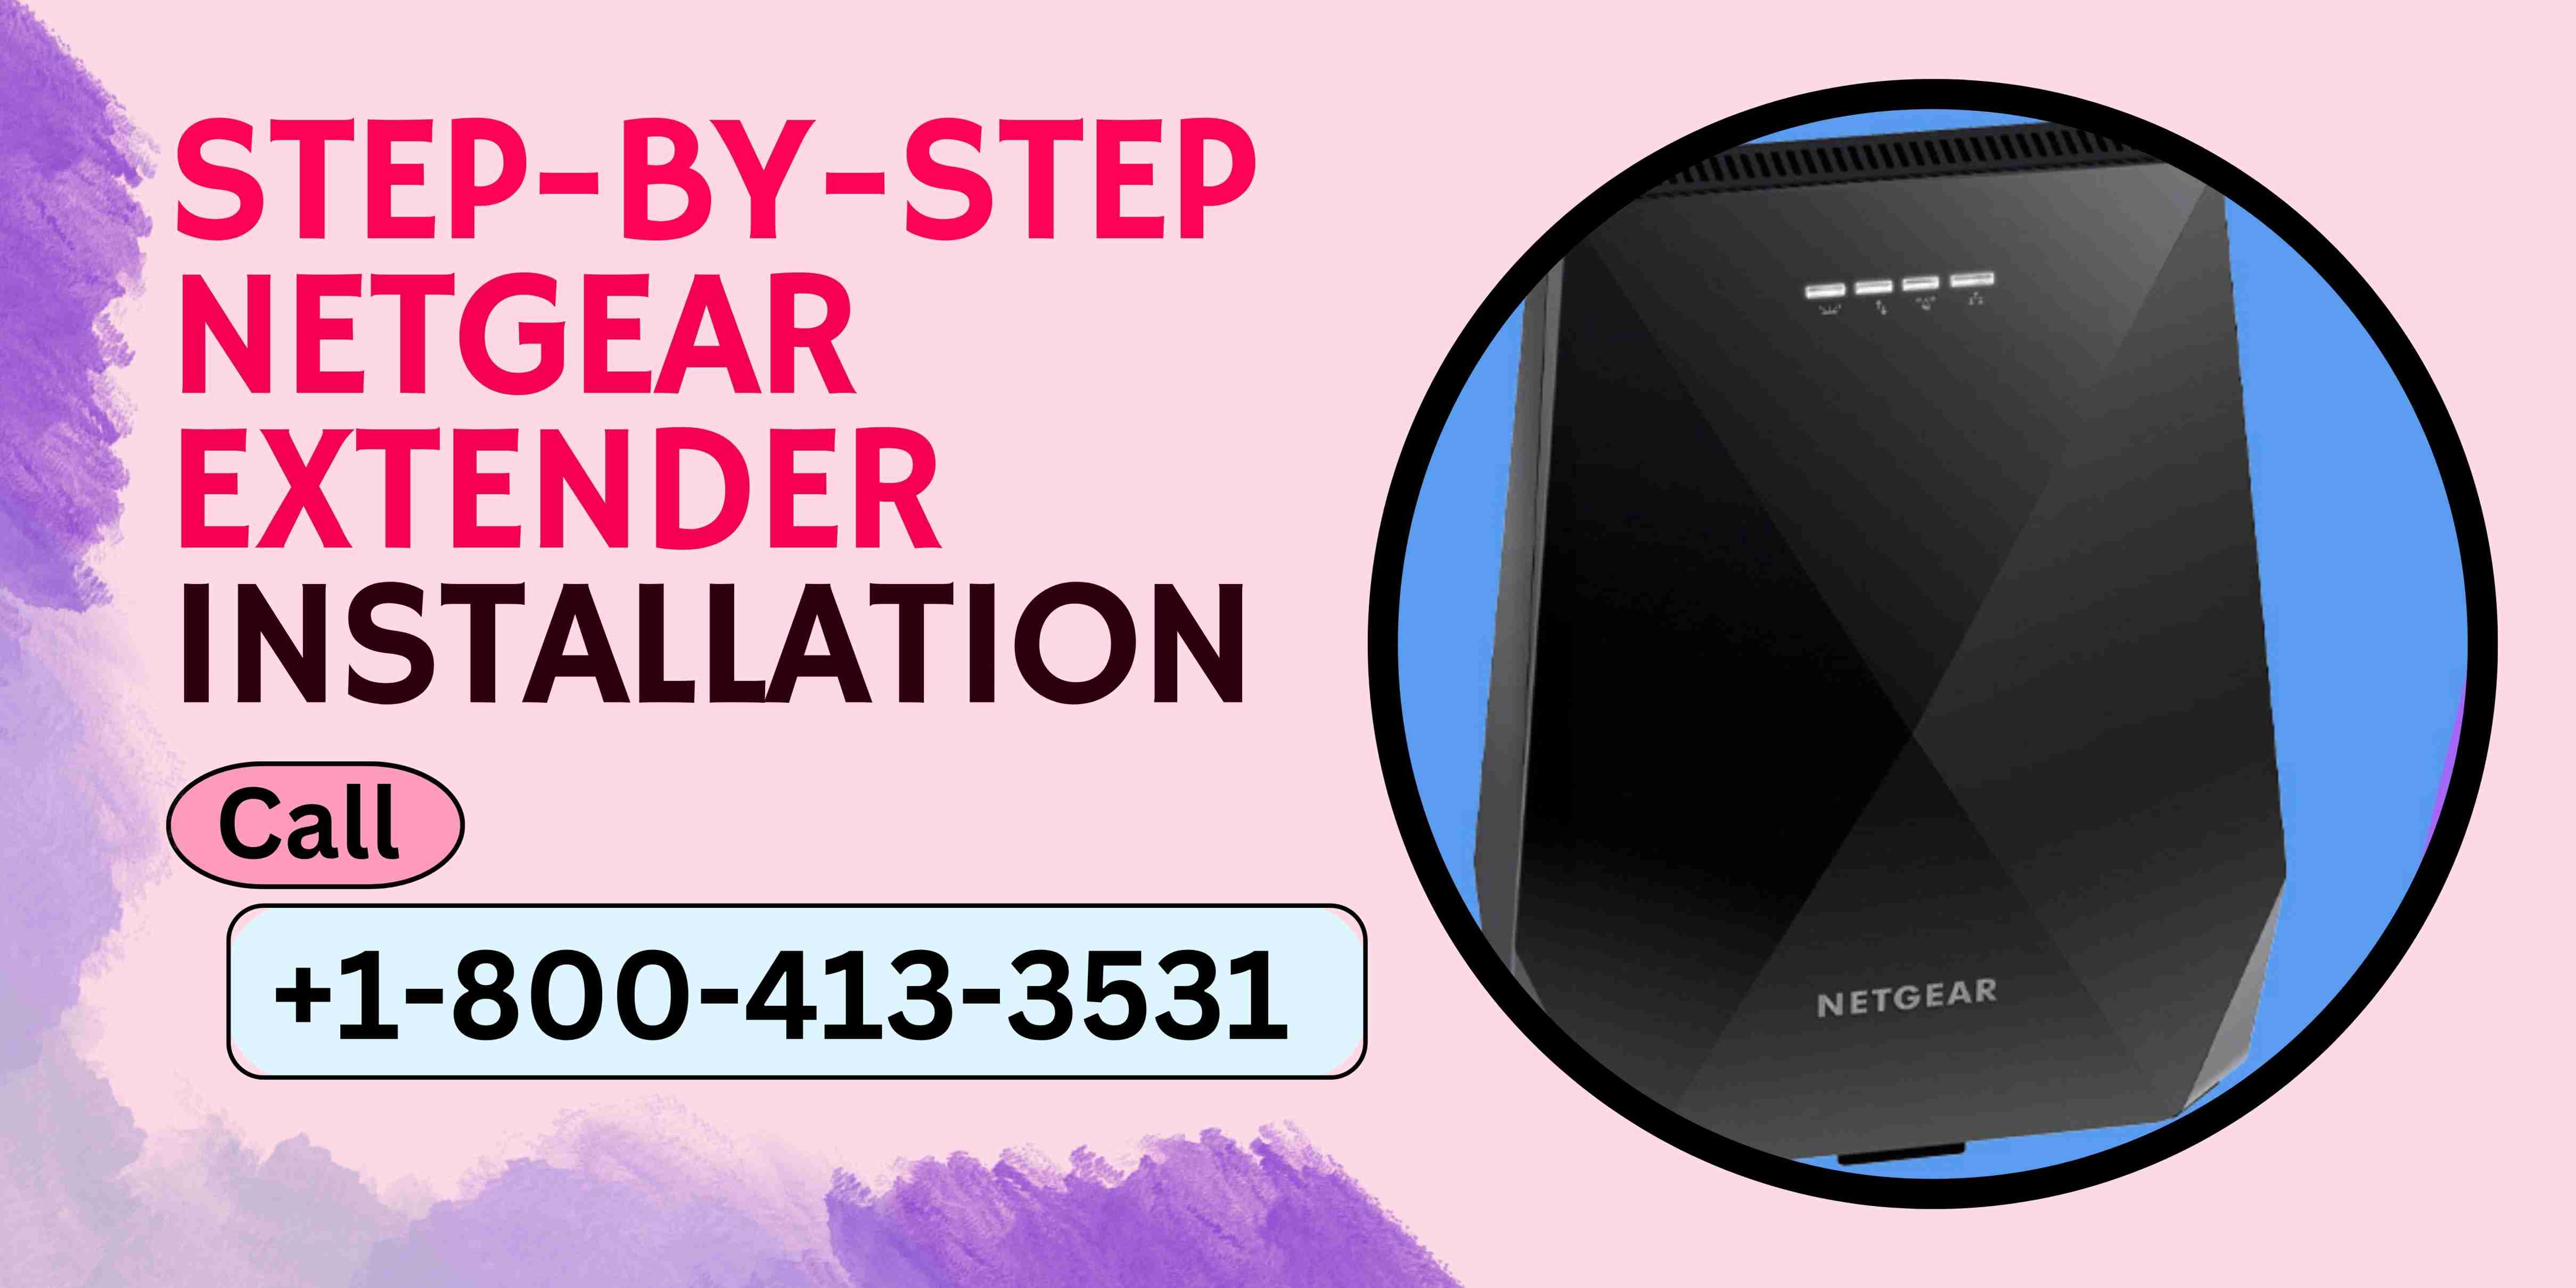 Step-by-Step Netgear Extender Installation | Call +1-800-413-3531 